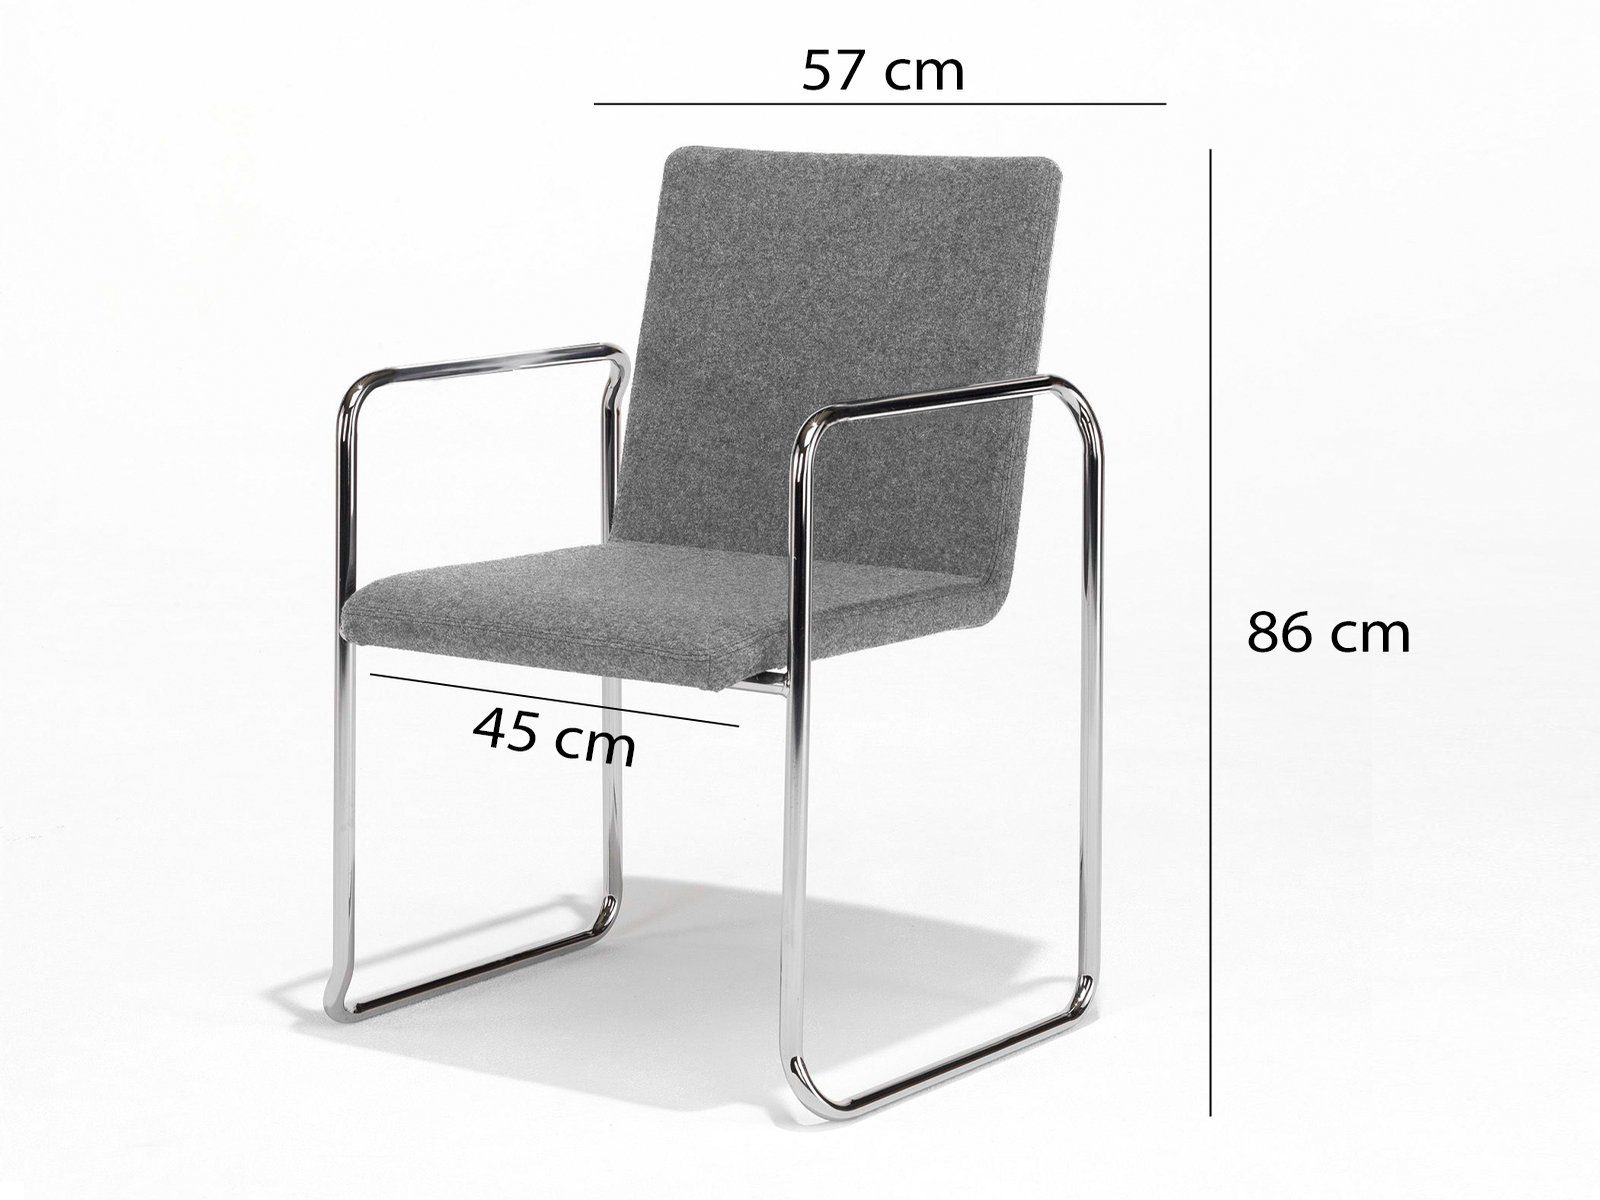 Bauhaus-stil Freischwinger, mit weiß Sitzkultur Schwingstuhl Büromöbel Mauser Grau 2x Set Beistelltisch